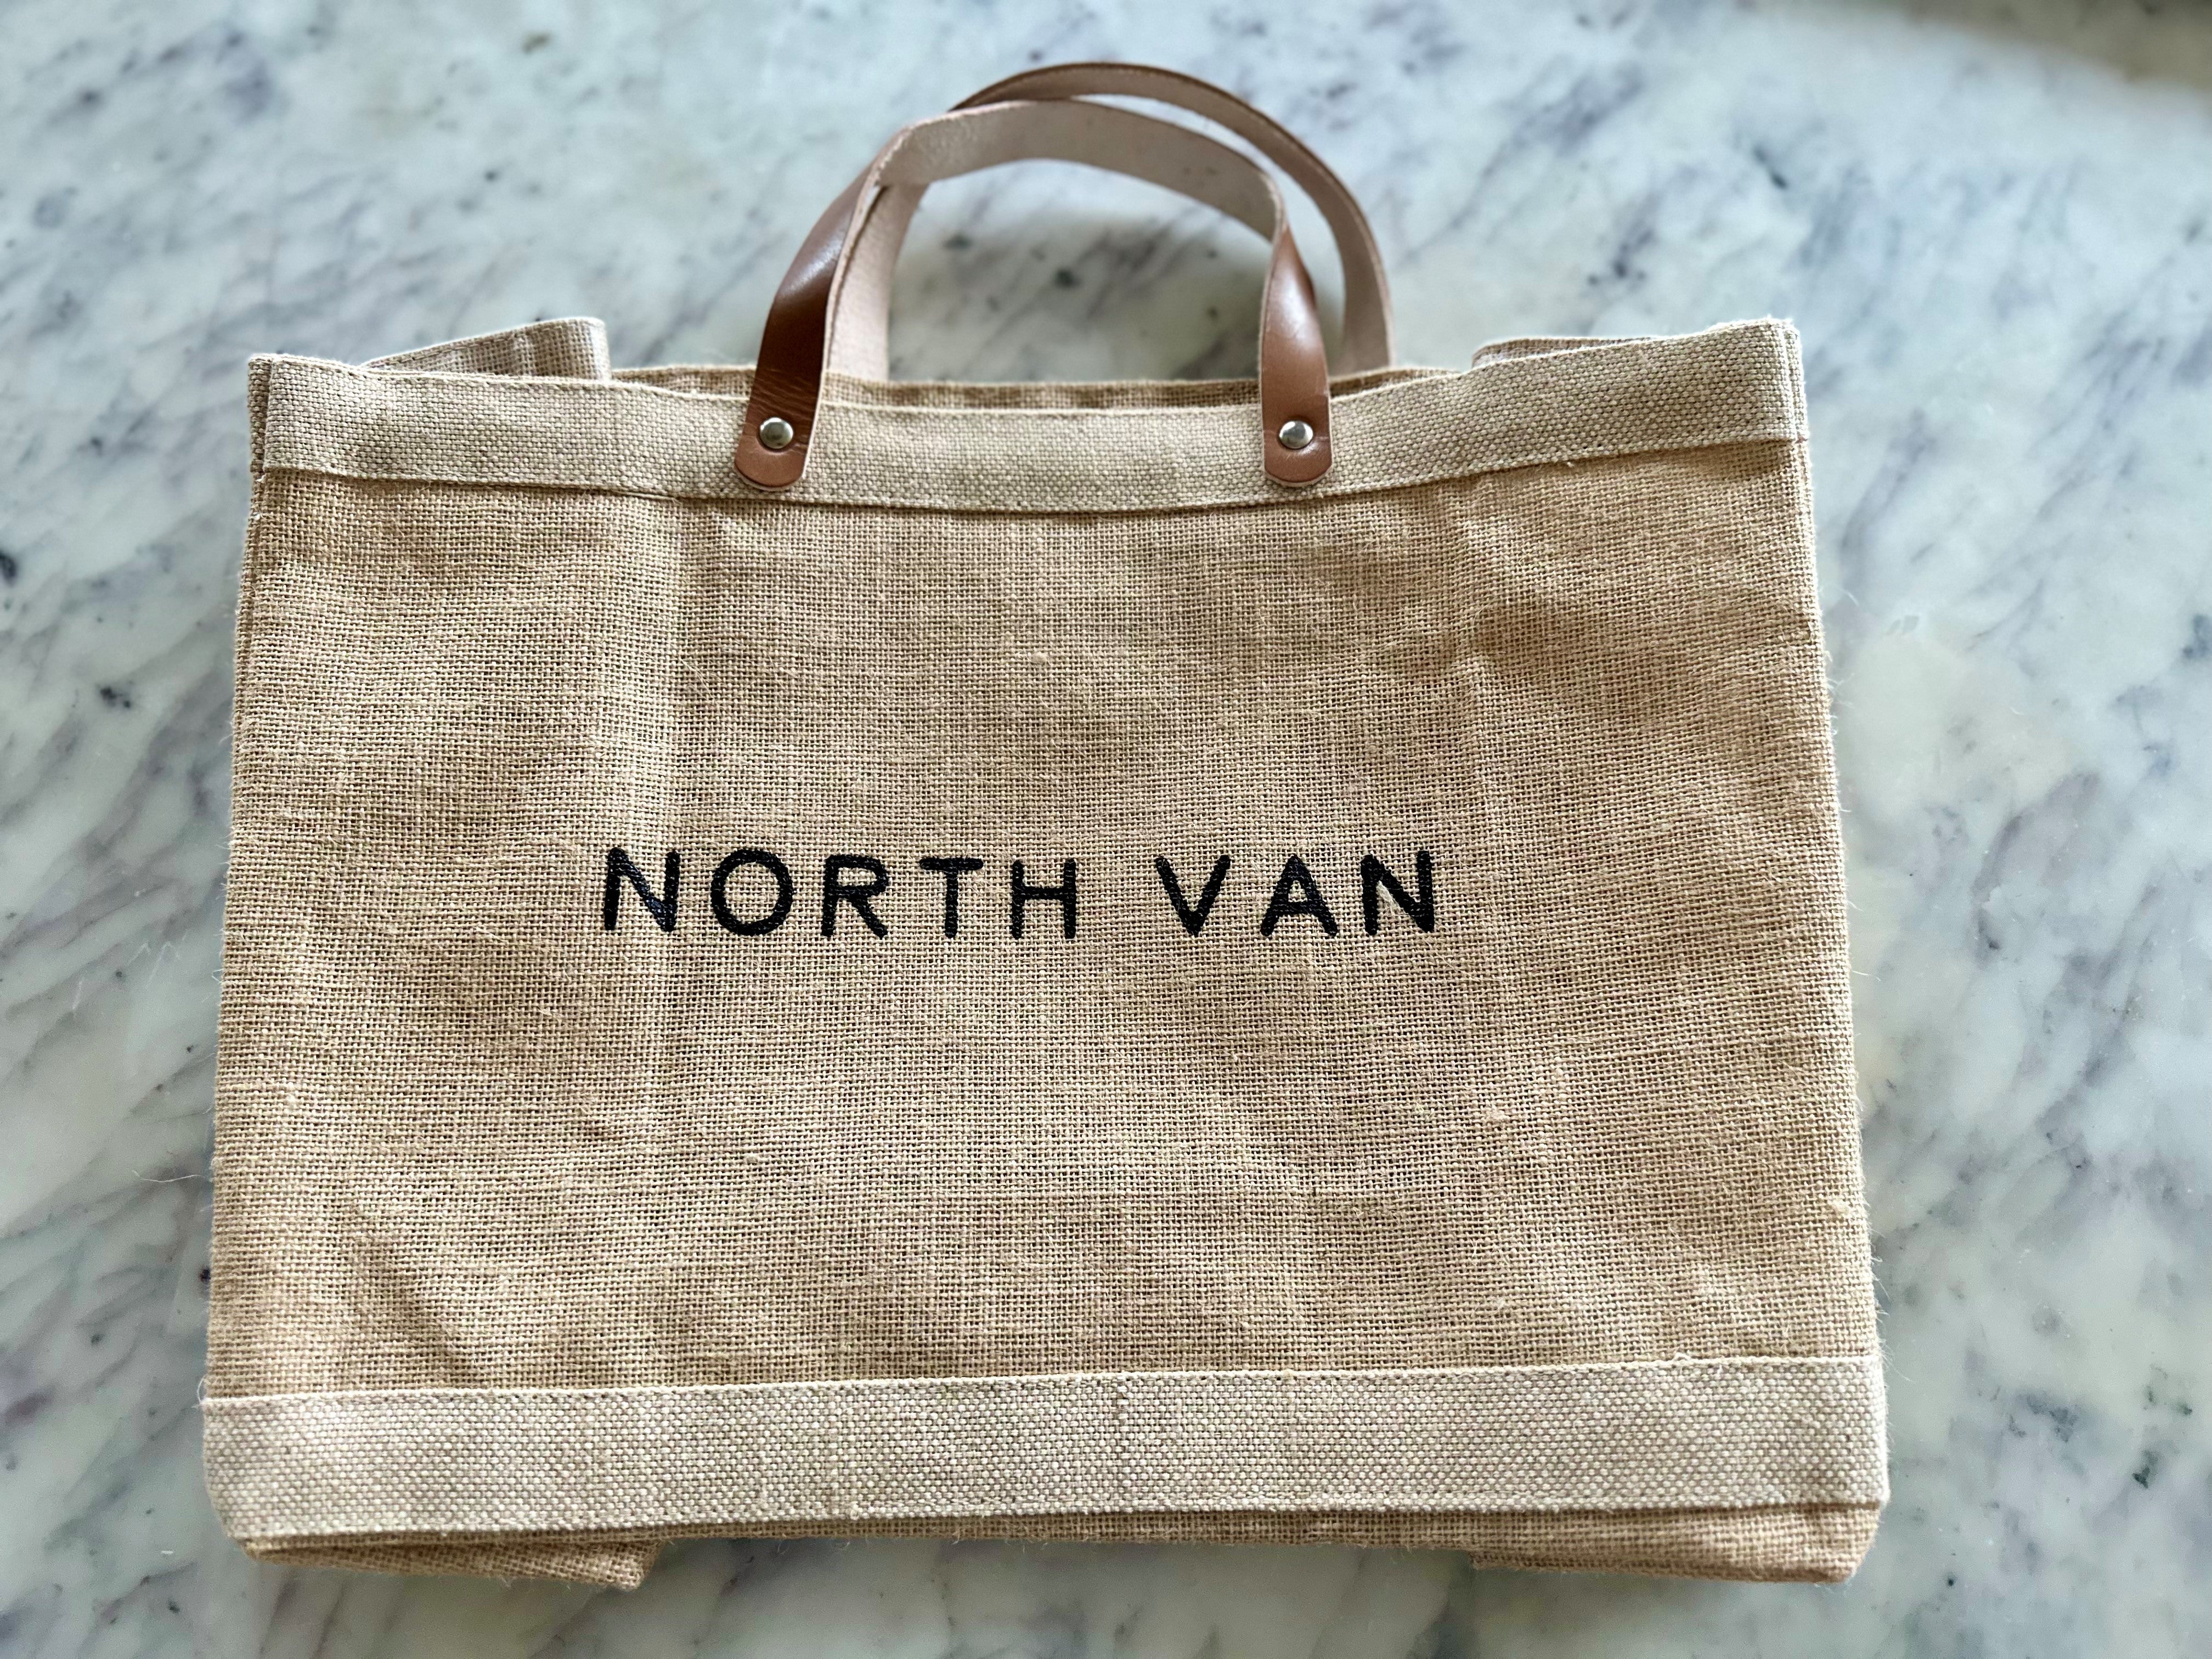 North Van Petite Bag